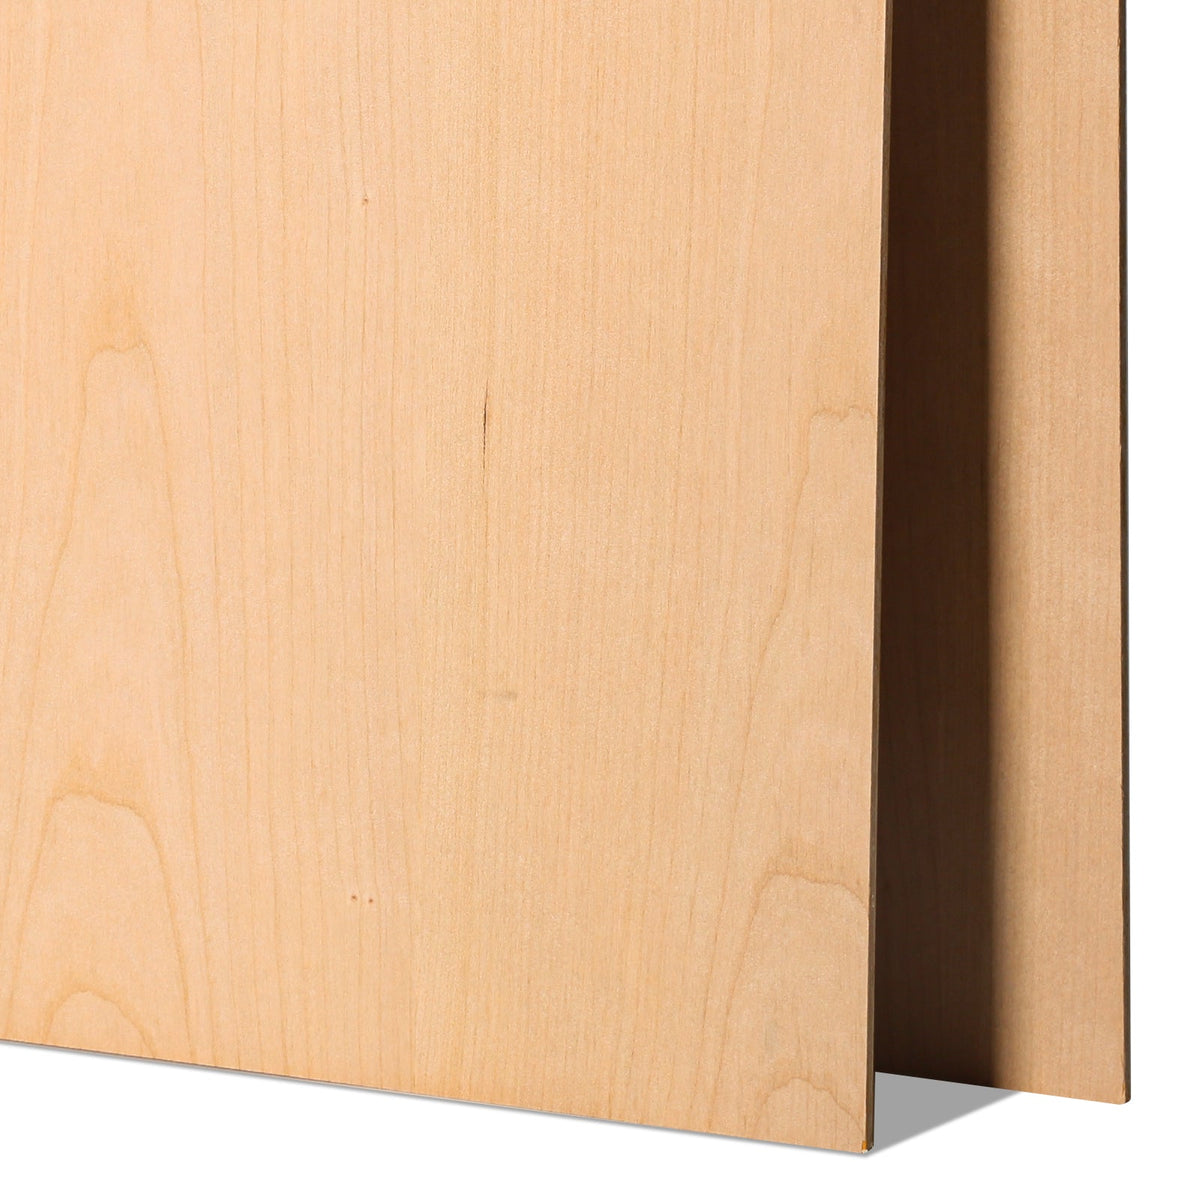 6 Stück Kirschholz-Sperrholz, 12 x 12, unbehandeltes Holz zum Basteln, Lasergravieren, Schneiden, Malen